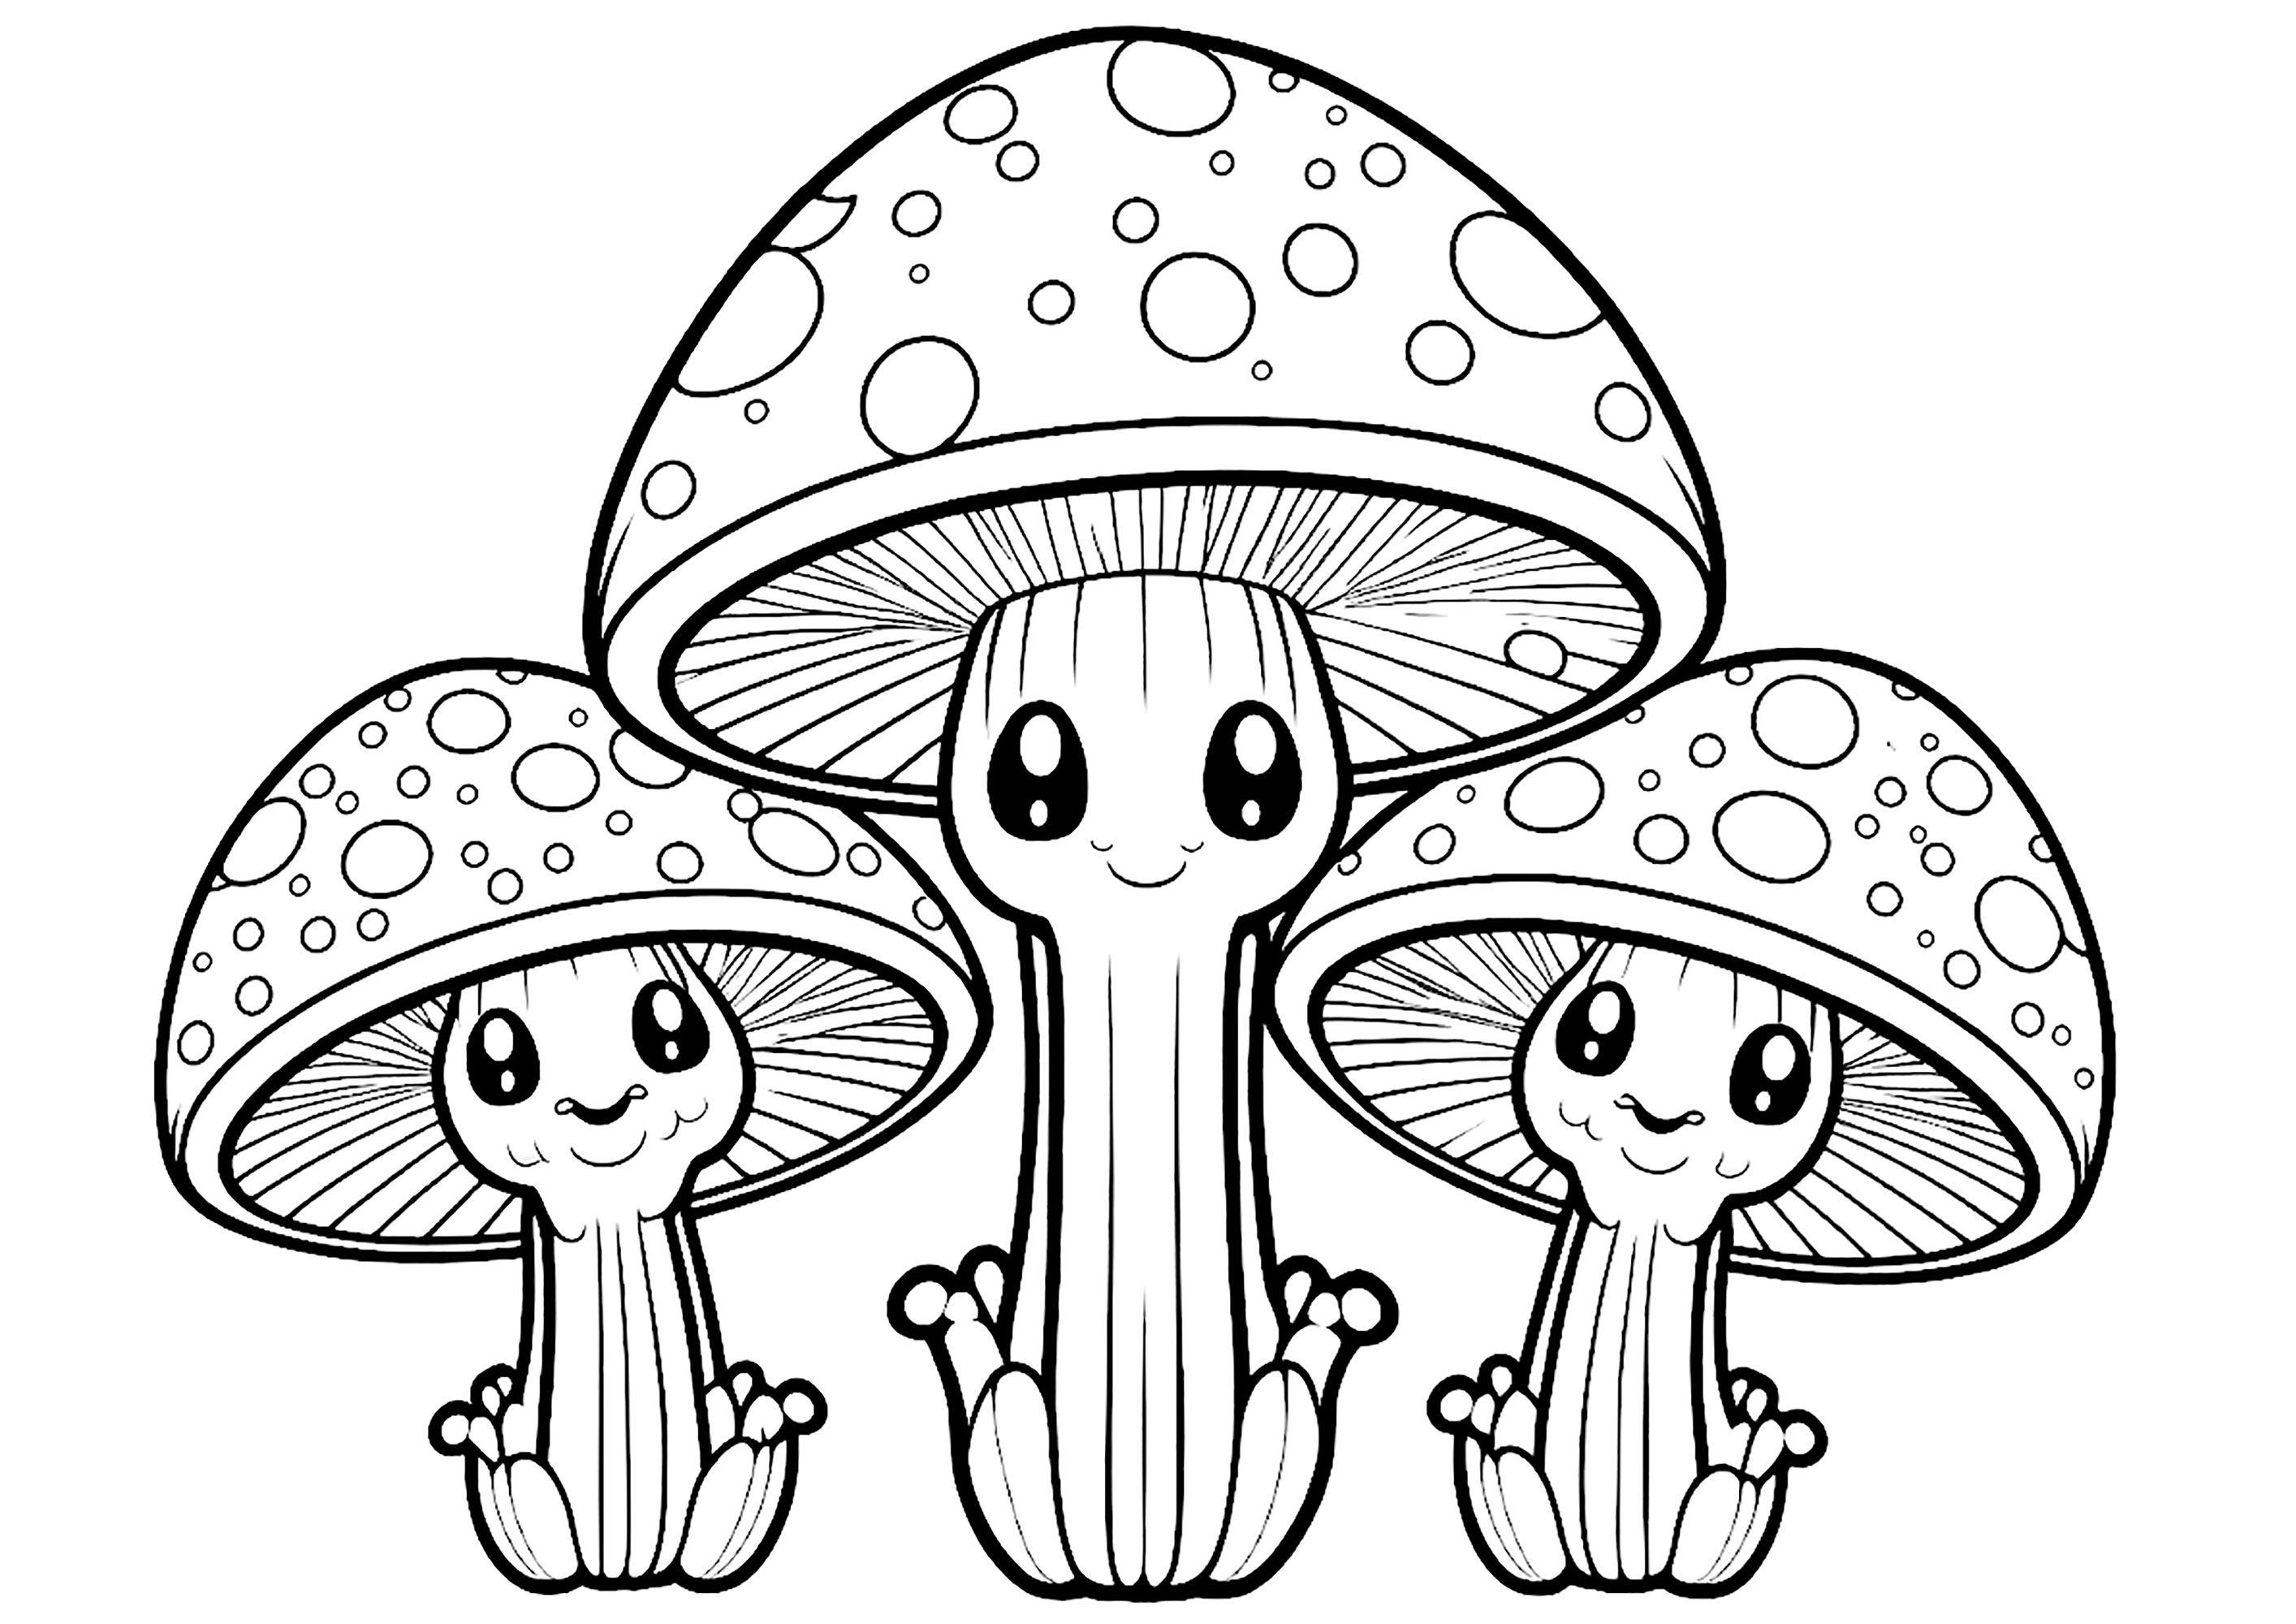 Três Cogumelos engraçados com olhos grandes